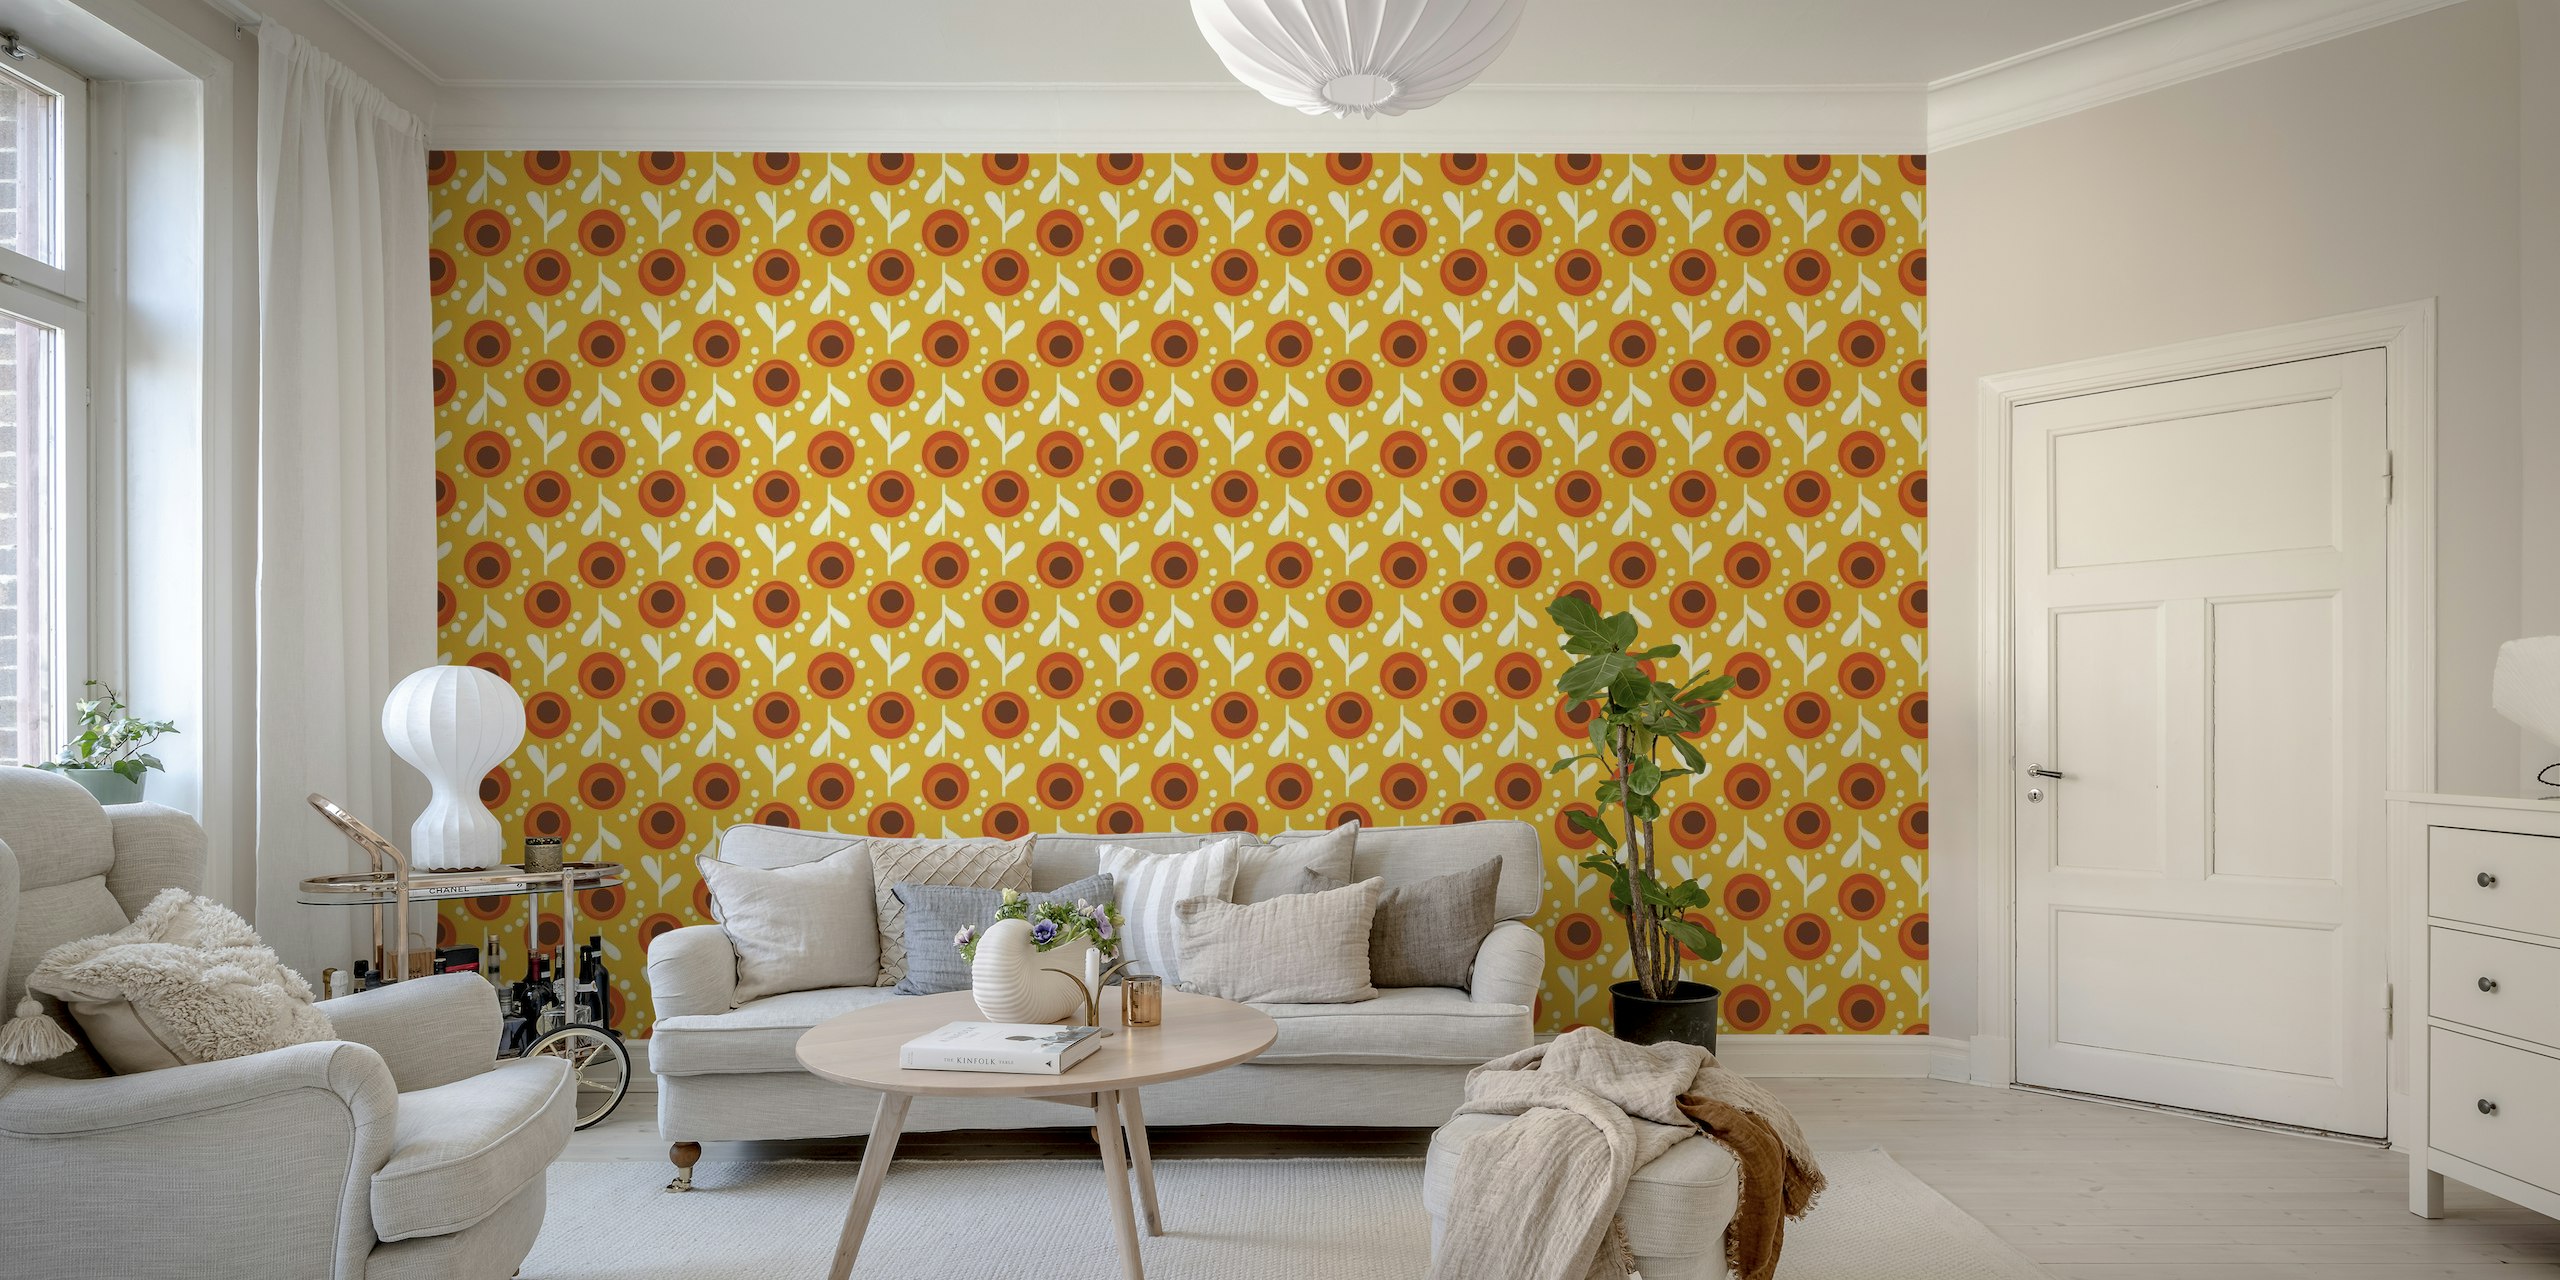 Mural de parede 'Retro Orange Floral' de inspiração vintage com flores laranja vibrantes e detalhes em branco sobre um fundo amarelo.